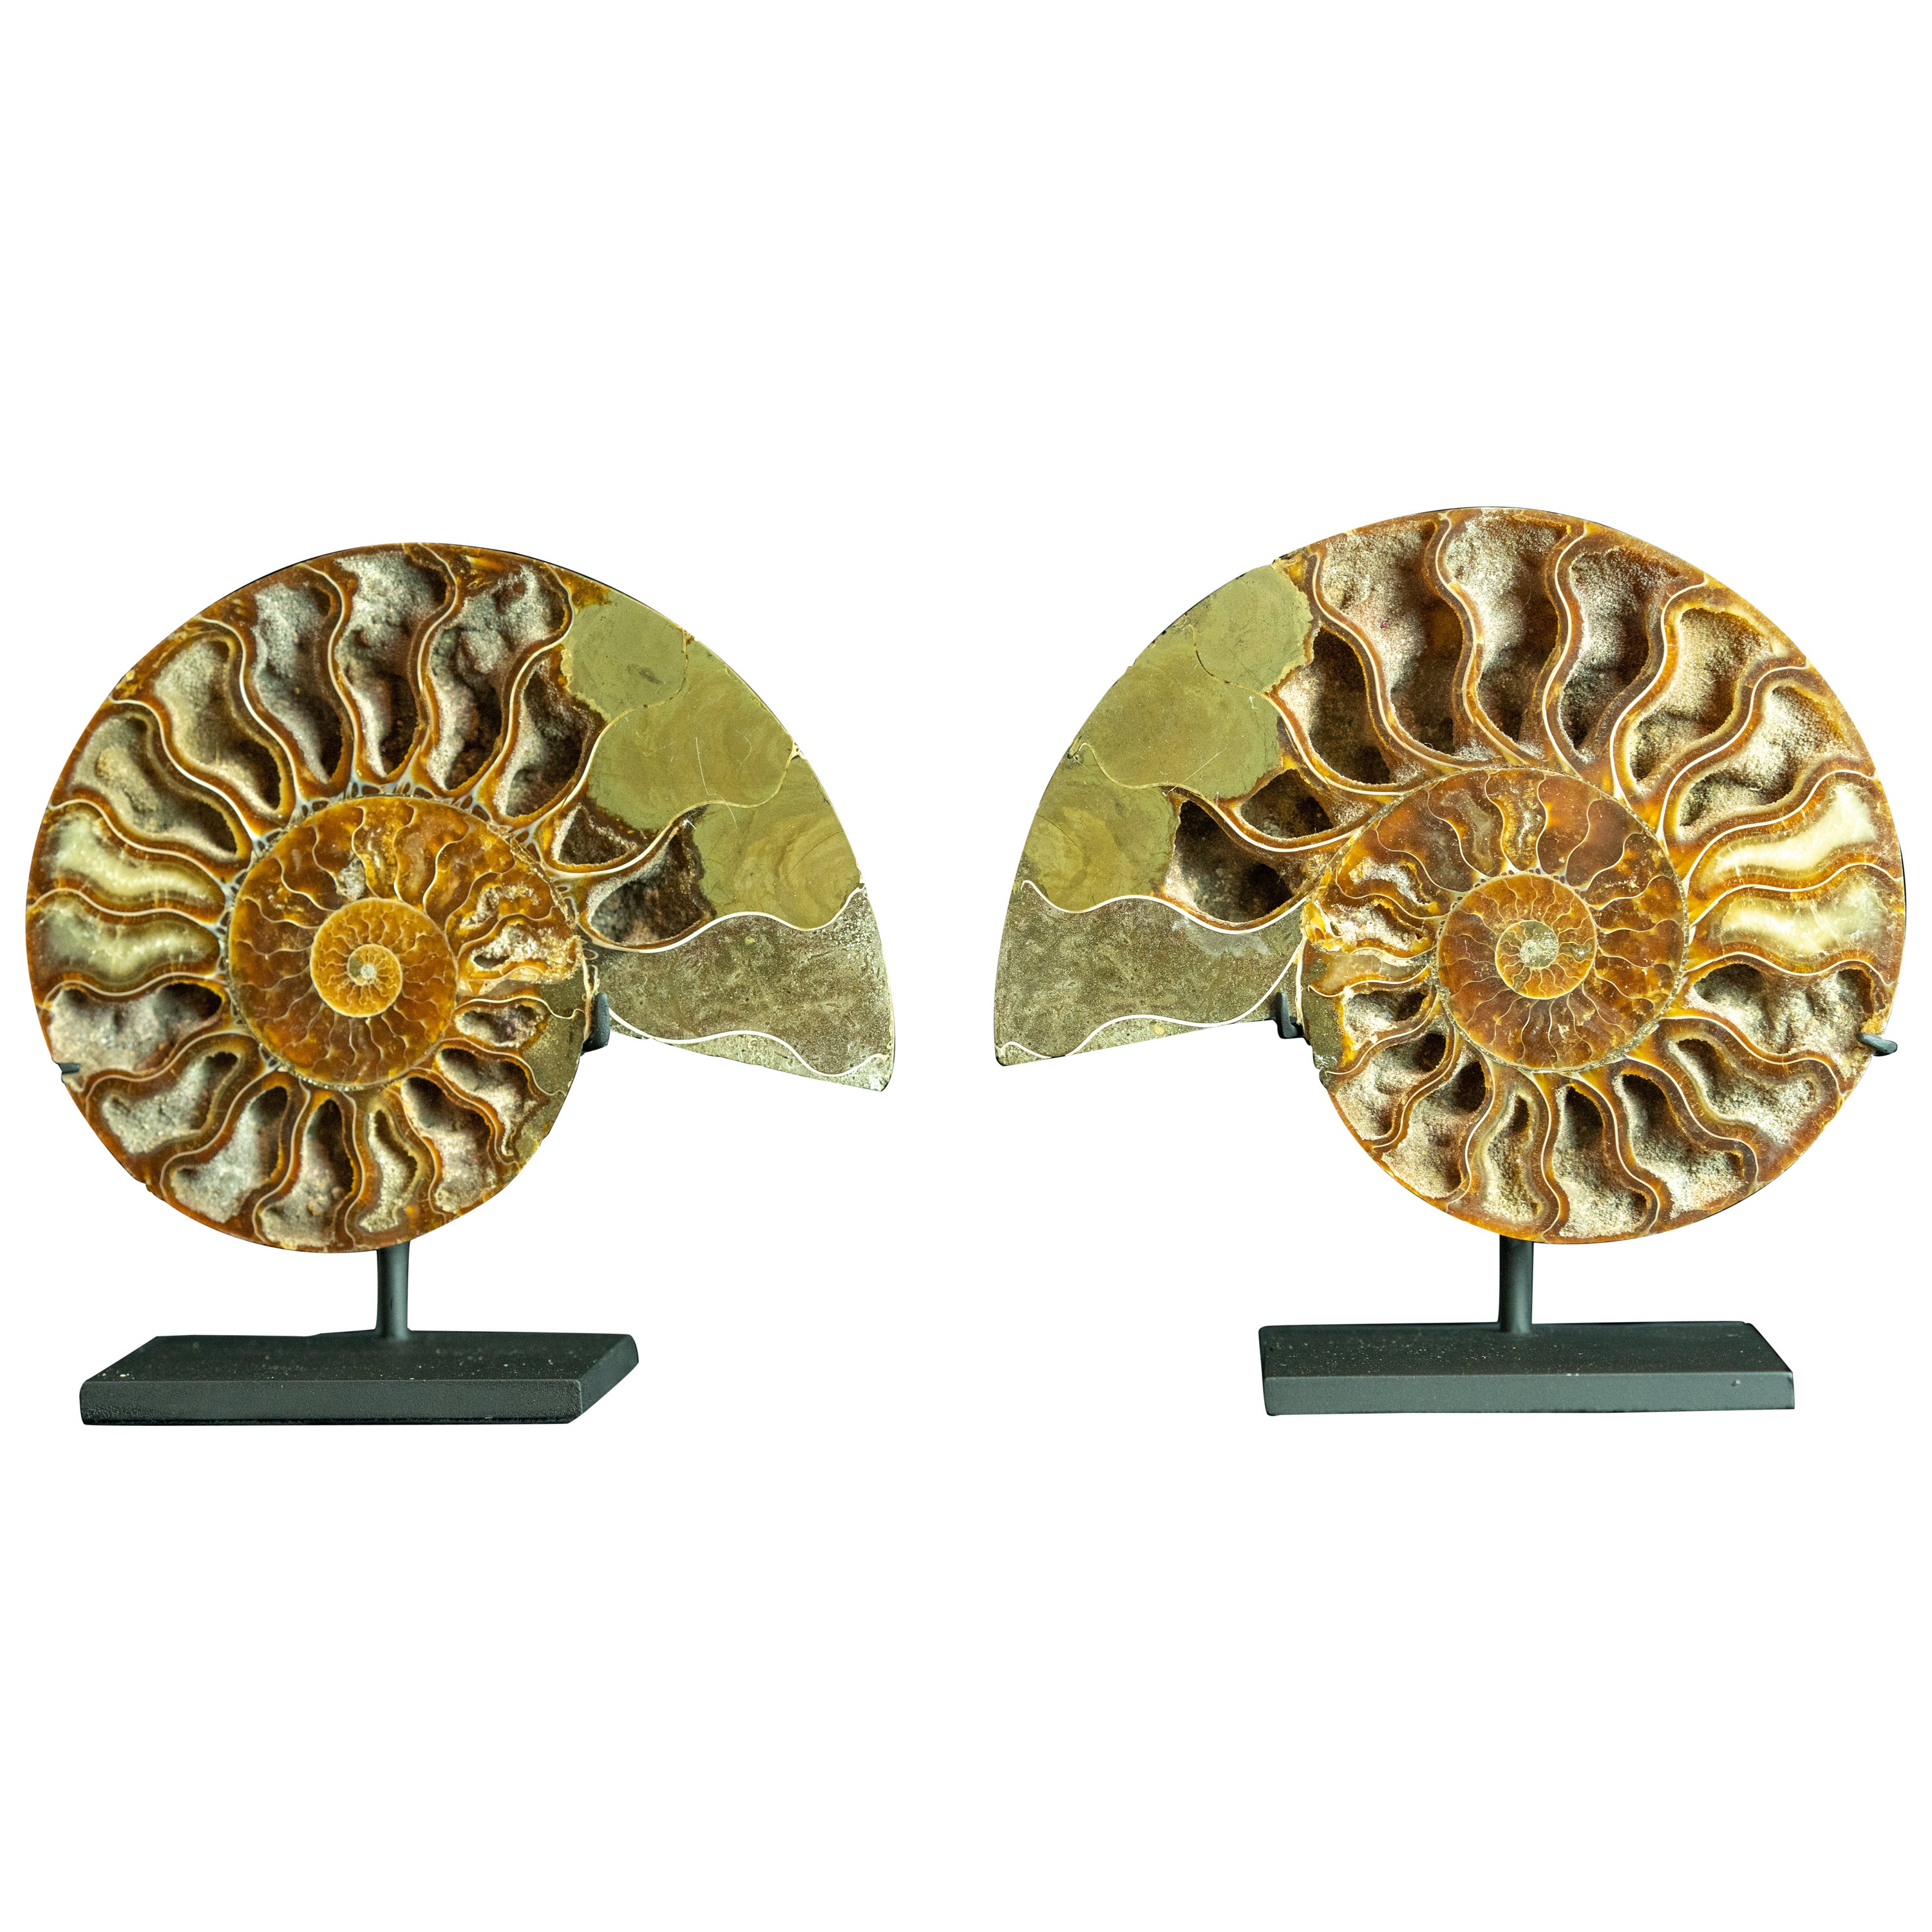 Mounted Ammonite 6" Pair